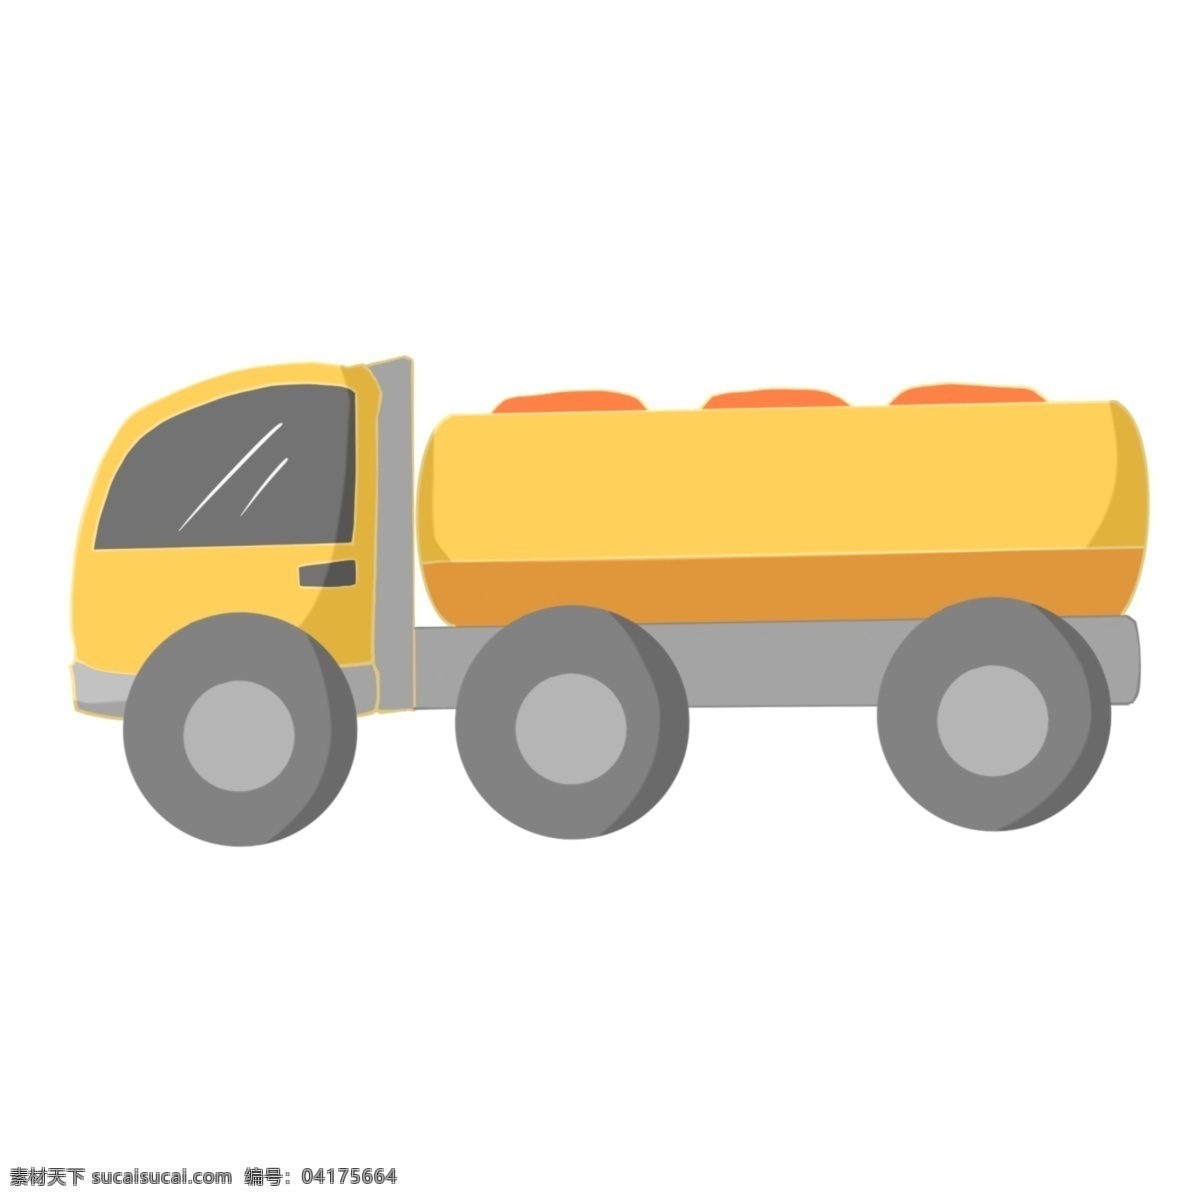 黄色 卡车 交通工具 商用 车筐 轱辘 车头 车玻璃